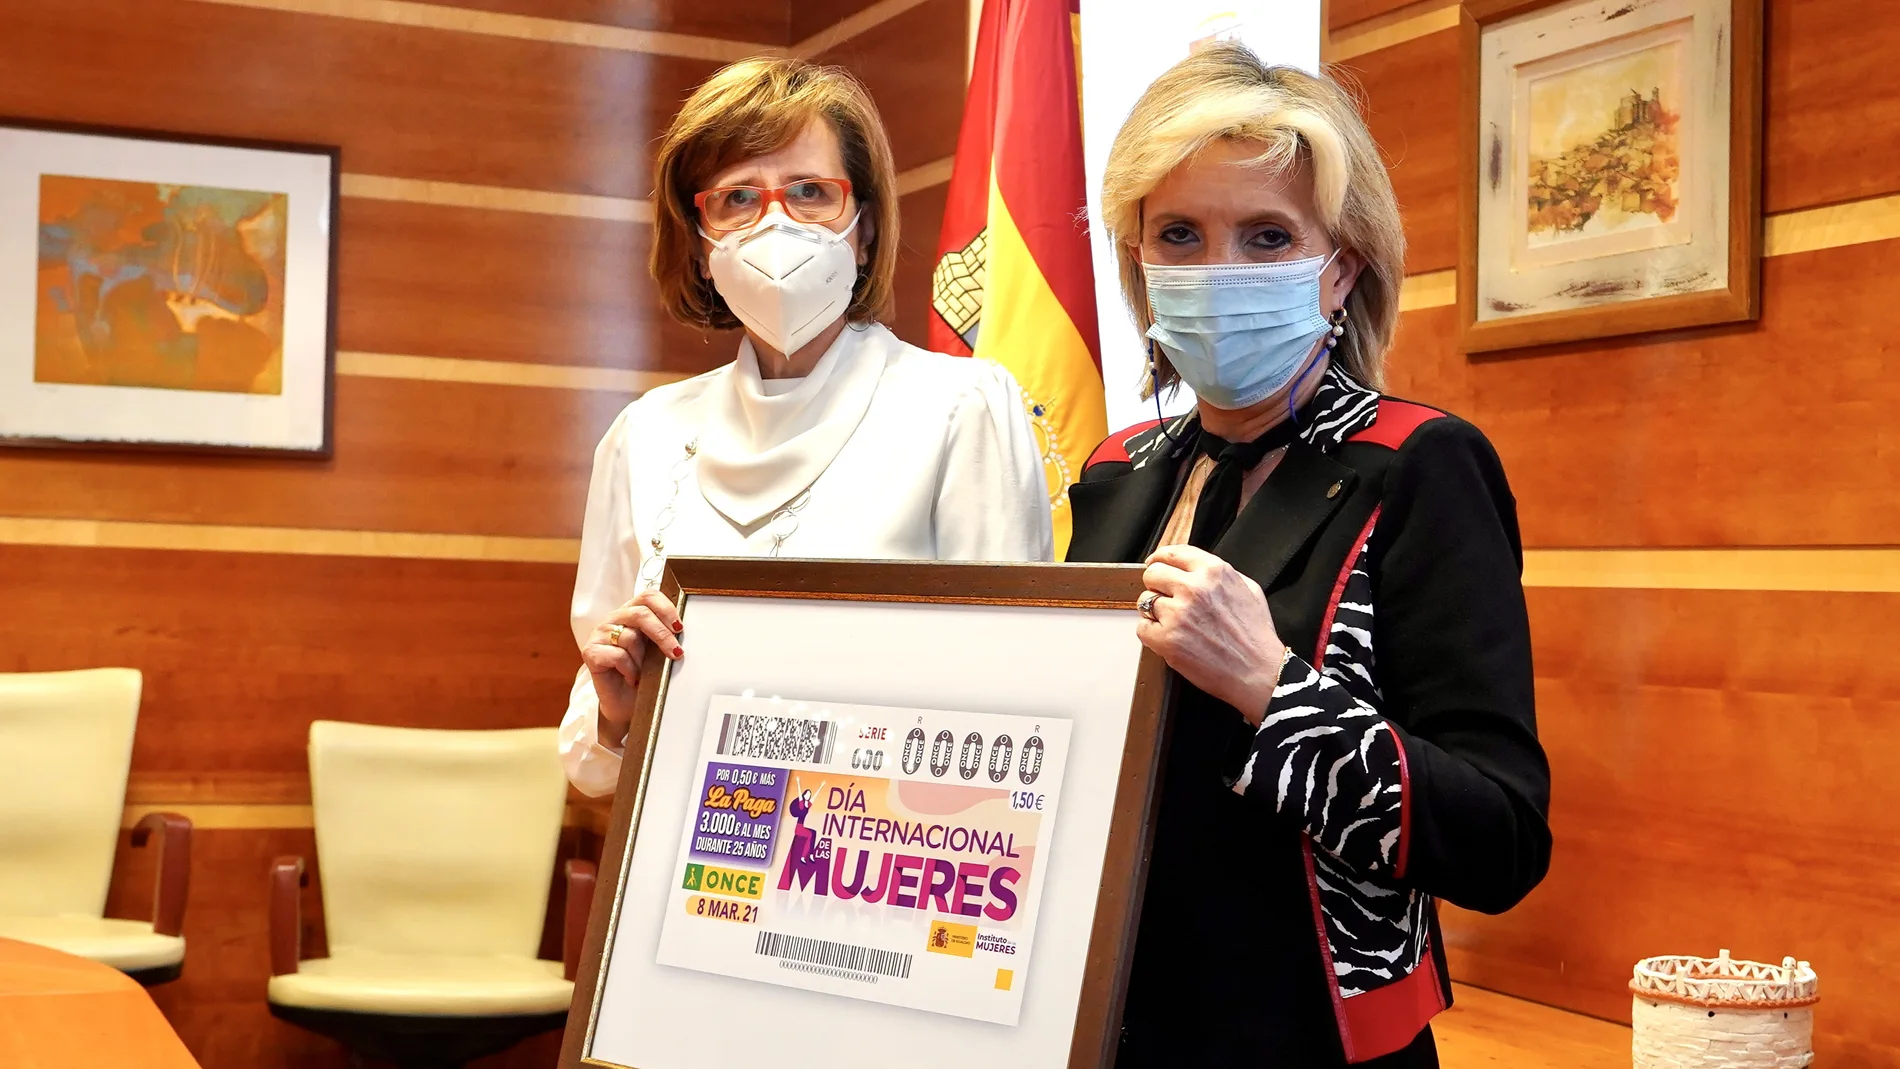 La consejera de Sanidad, Verónica Casado, recibe de la presidenta de la Once en Castilla y León, Rosa María Rubio Lázaro, un cupón conmemorativo con motivo del 8M